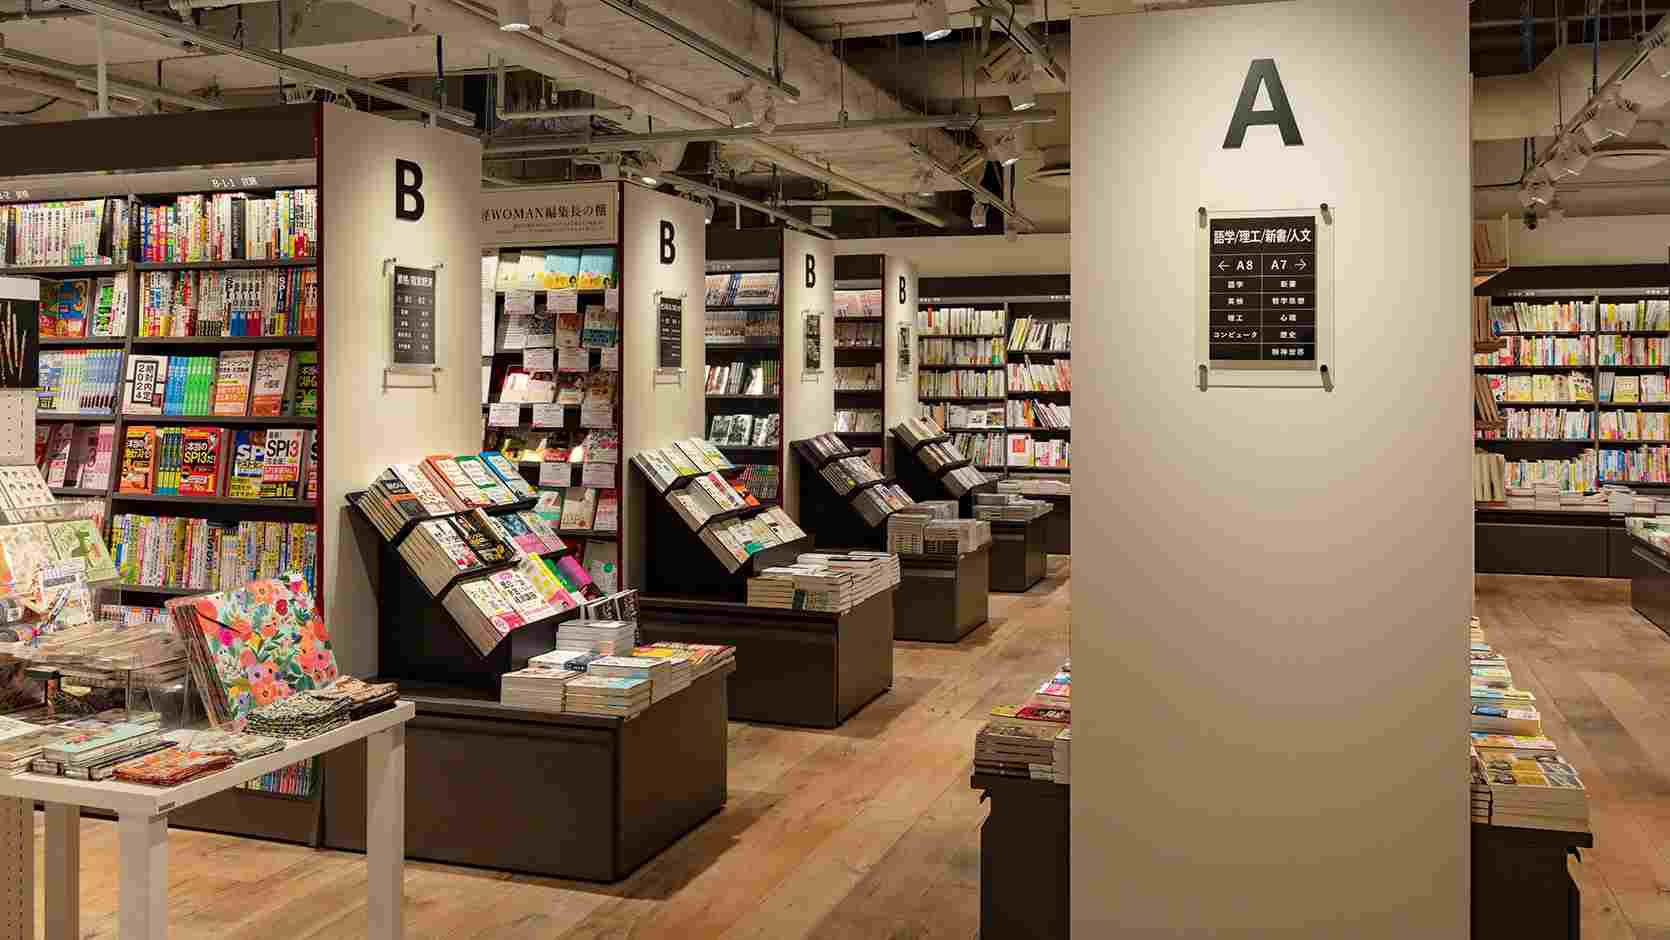 リデザインした本棚と、新装した空間に一体感のある売場のイメージ